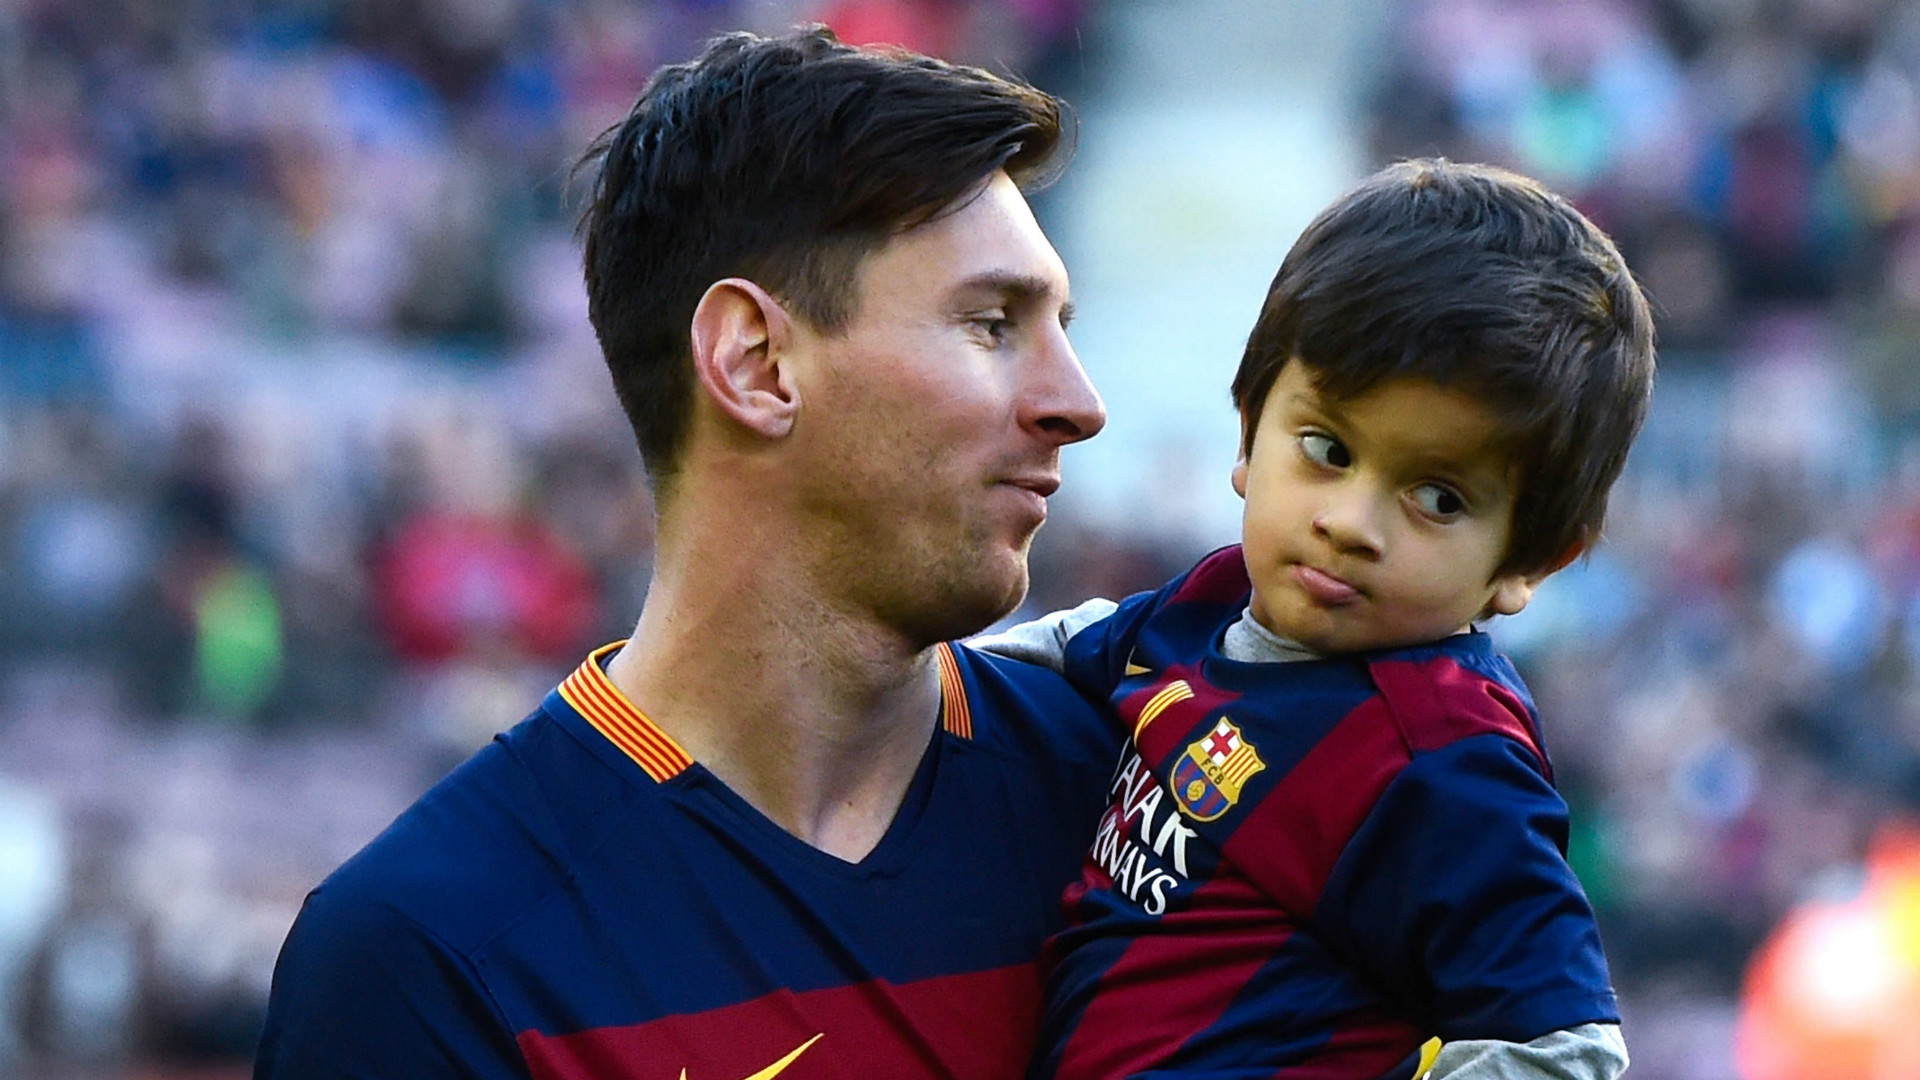 Tudo sobre Thiago e Mateo: quantos anos têm, o que gostam e como Messi